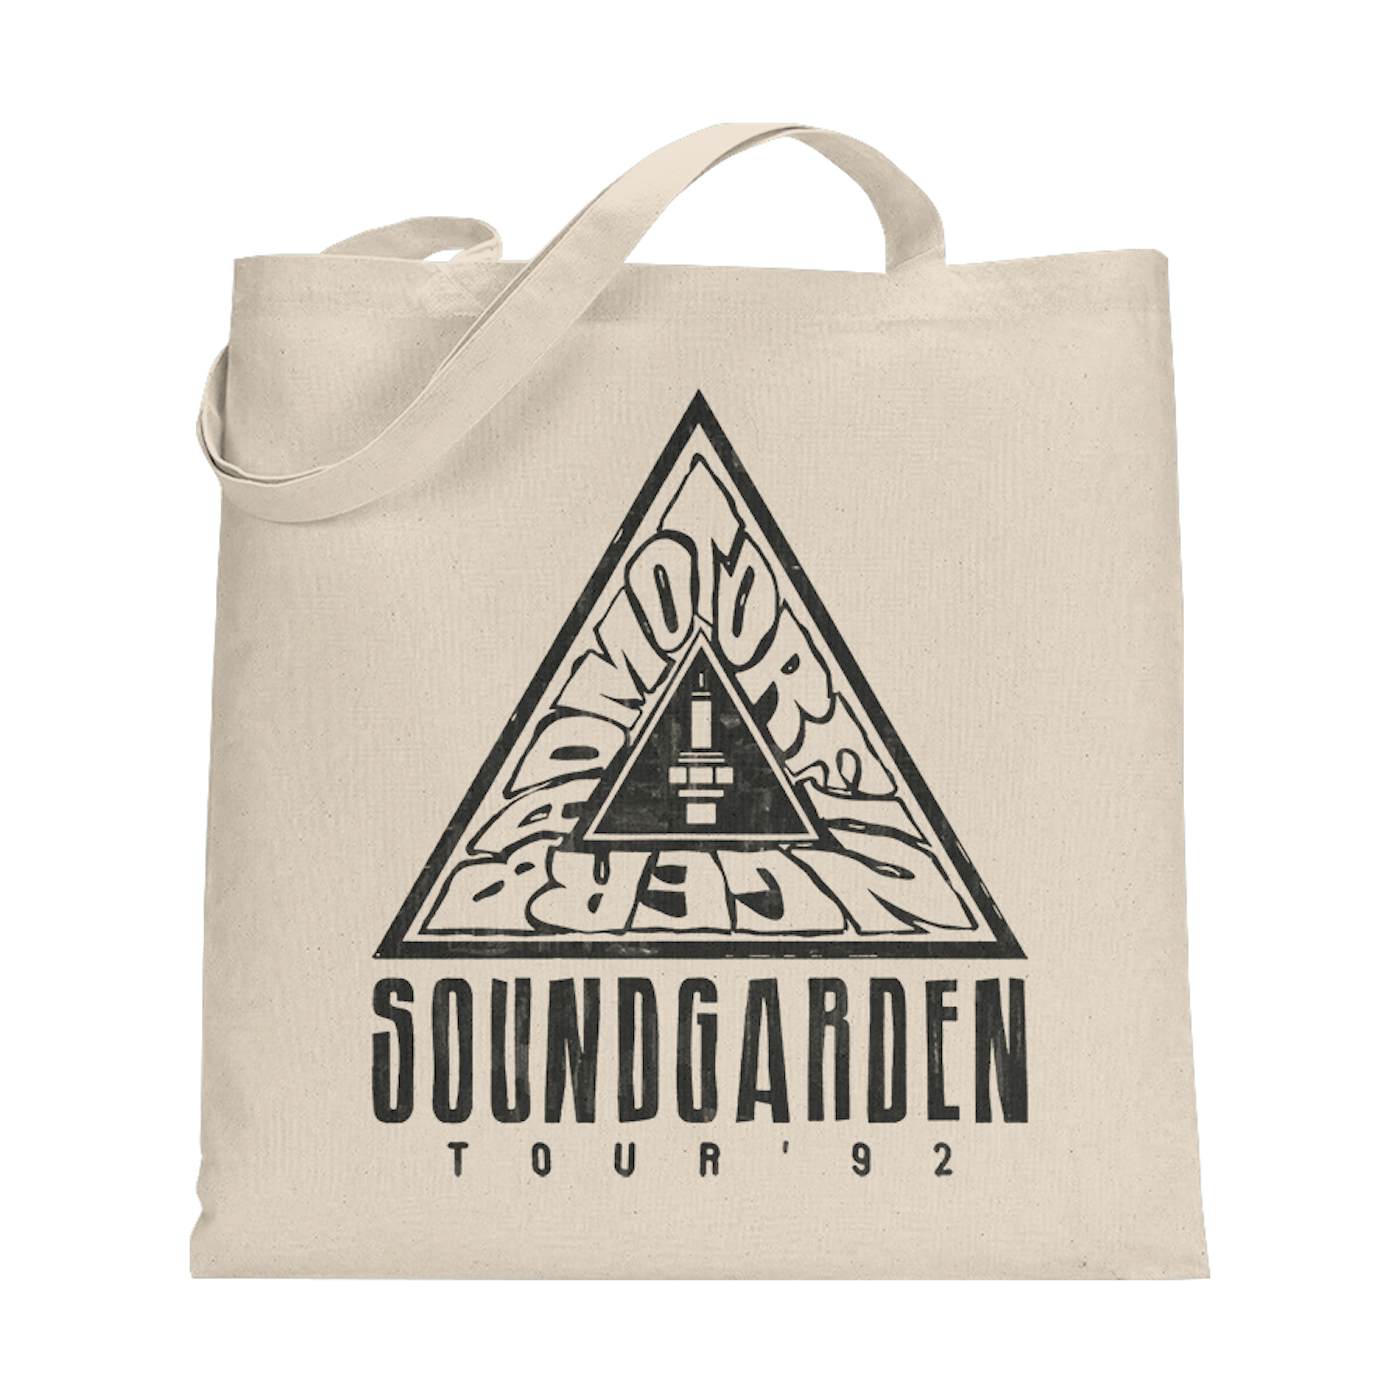 Soundgarden '92 Badmotorfinger Tour Tote